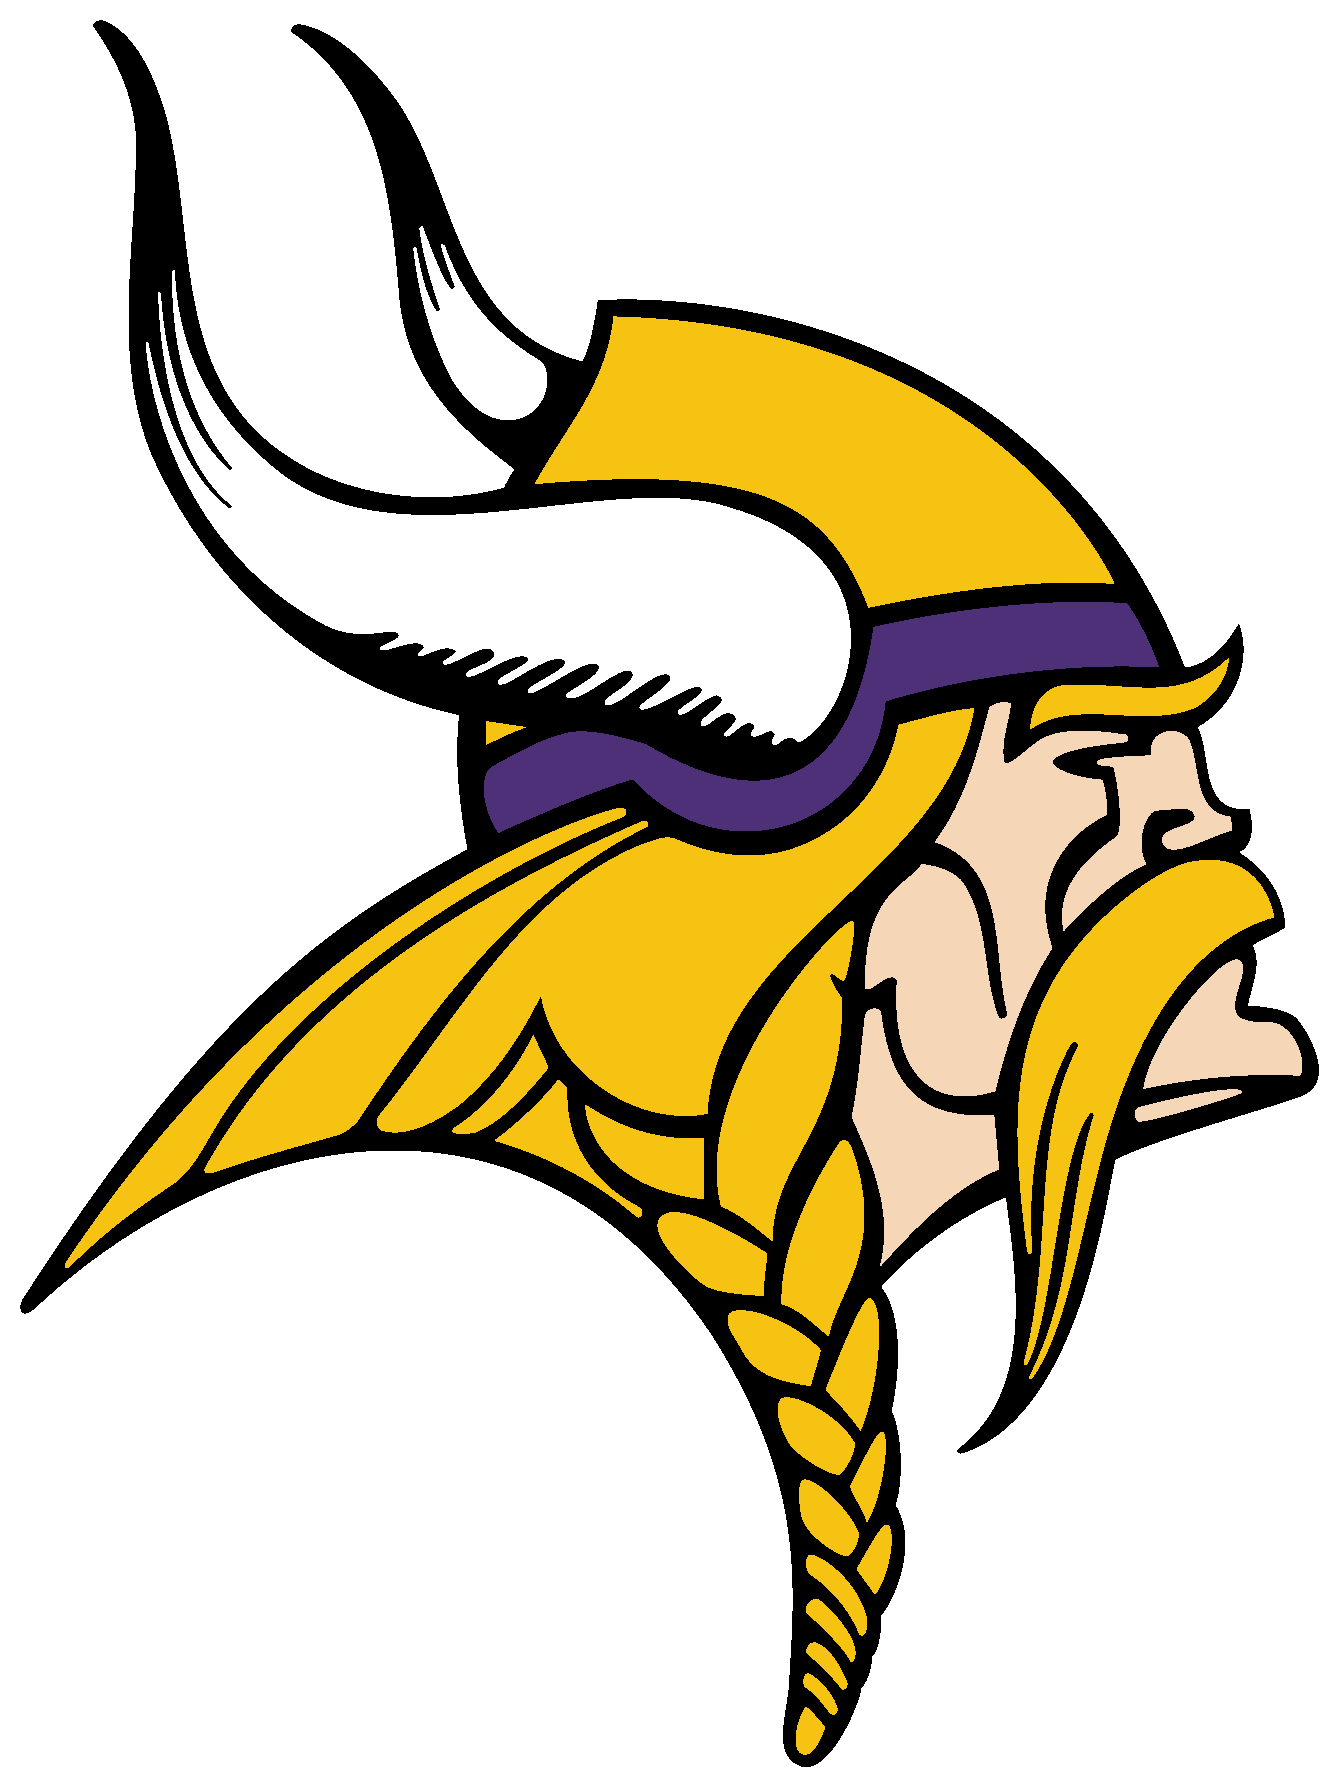 Minnesota Vikings Logo Download Vector